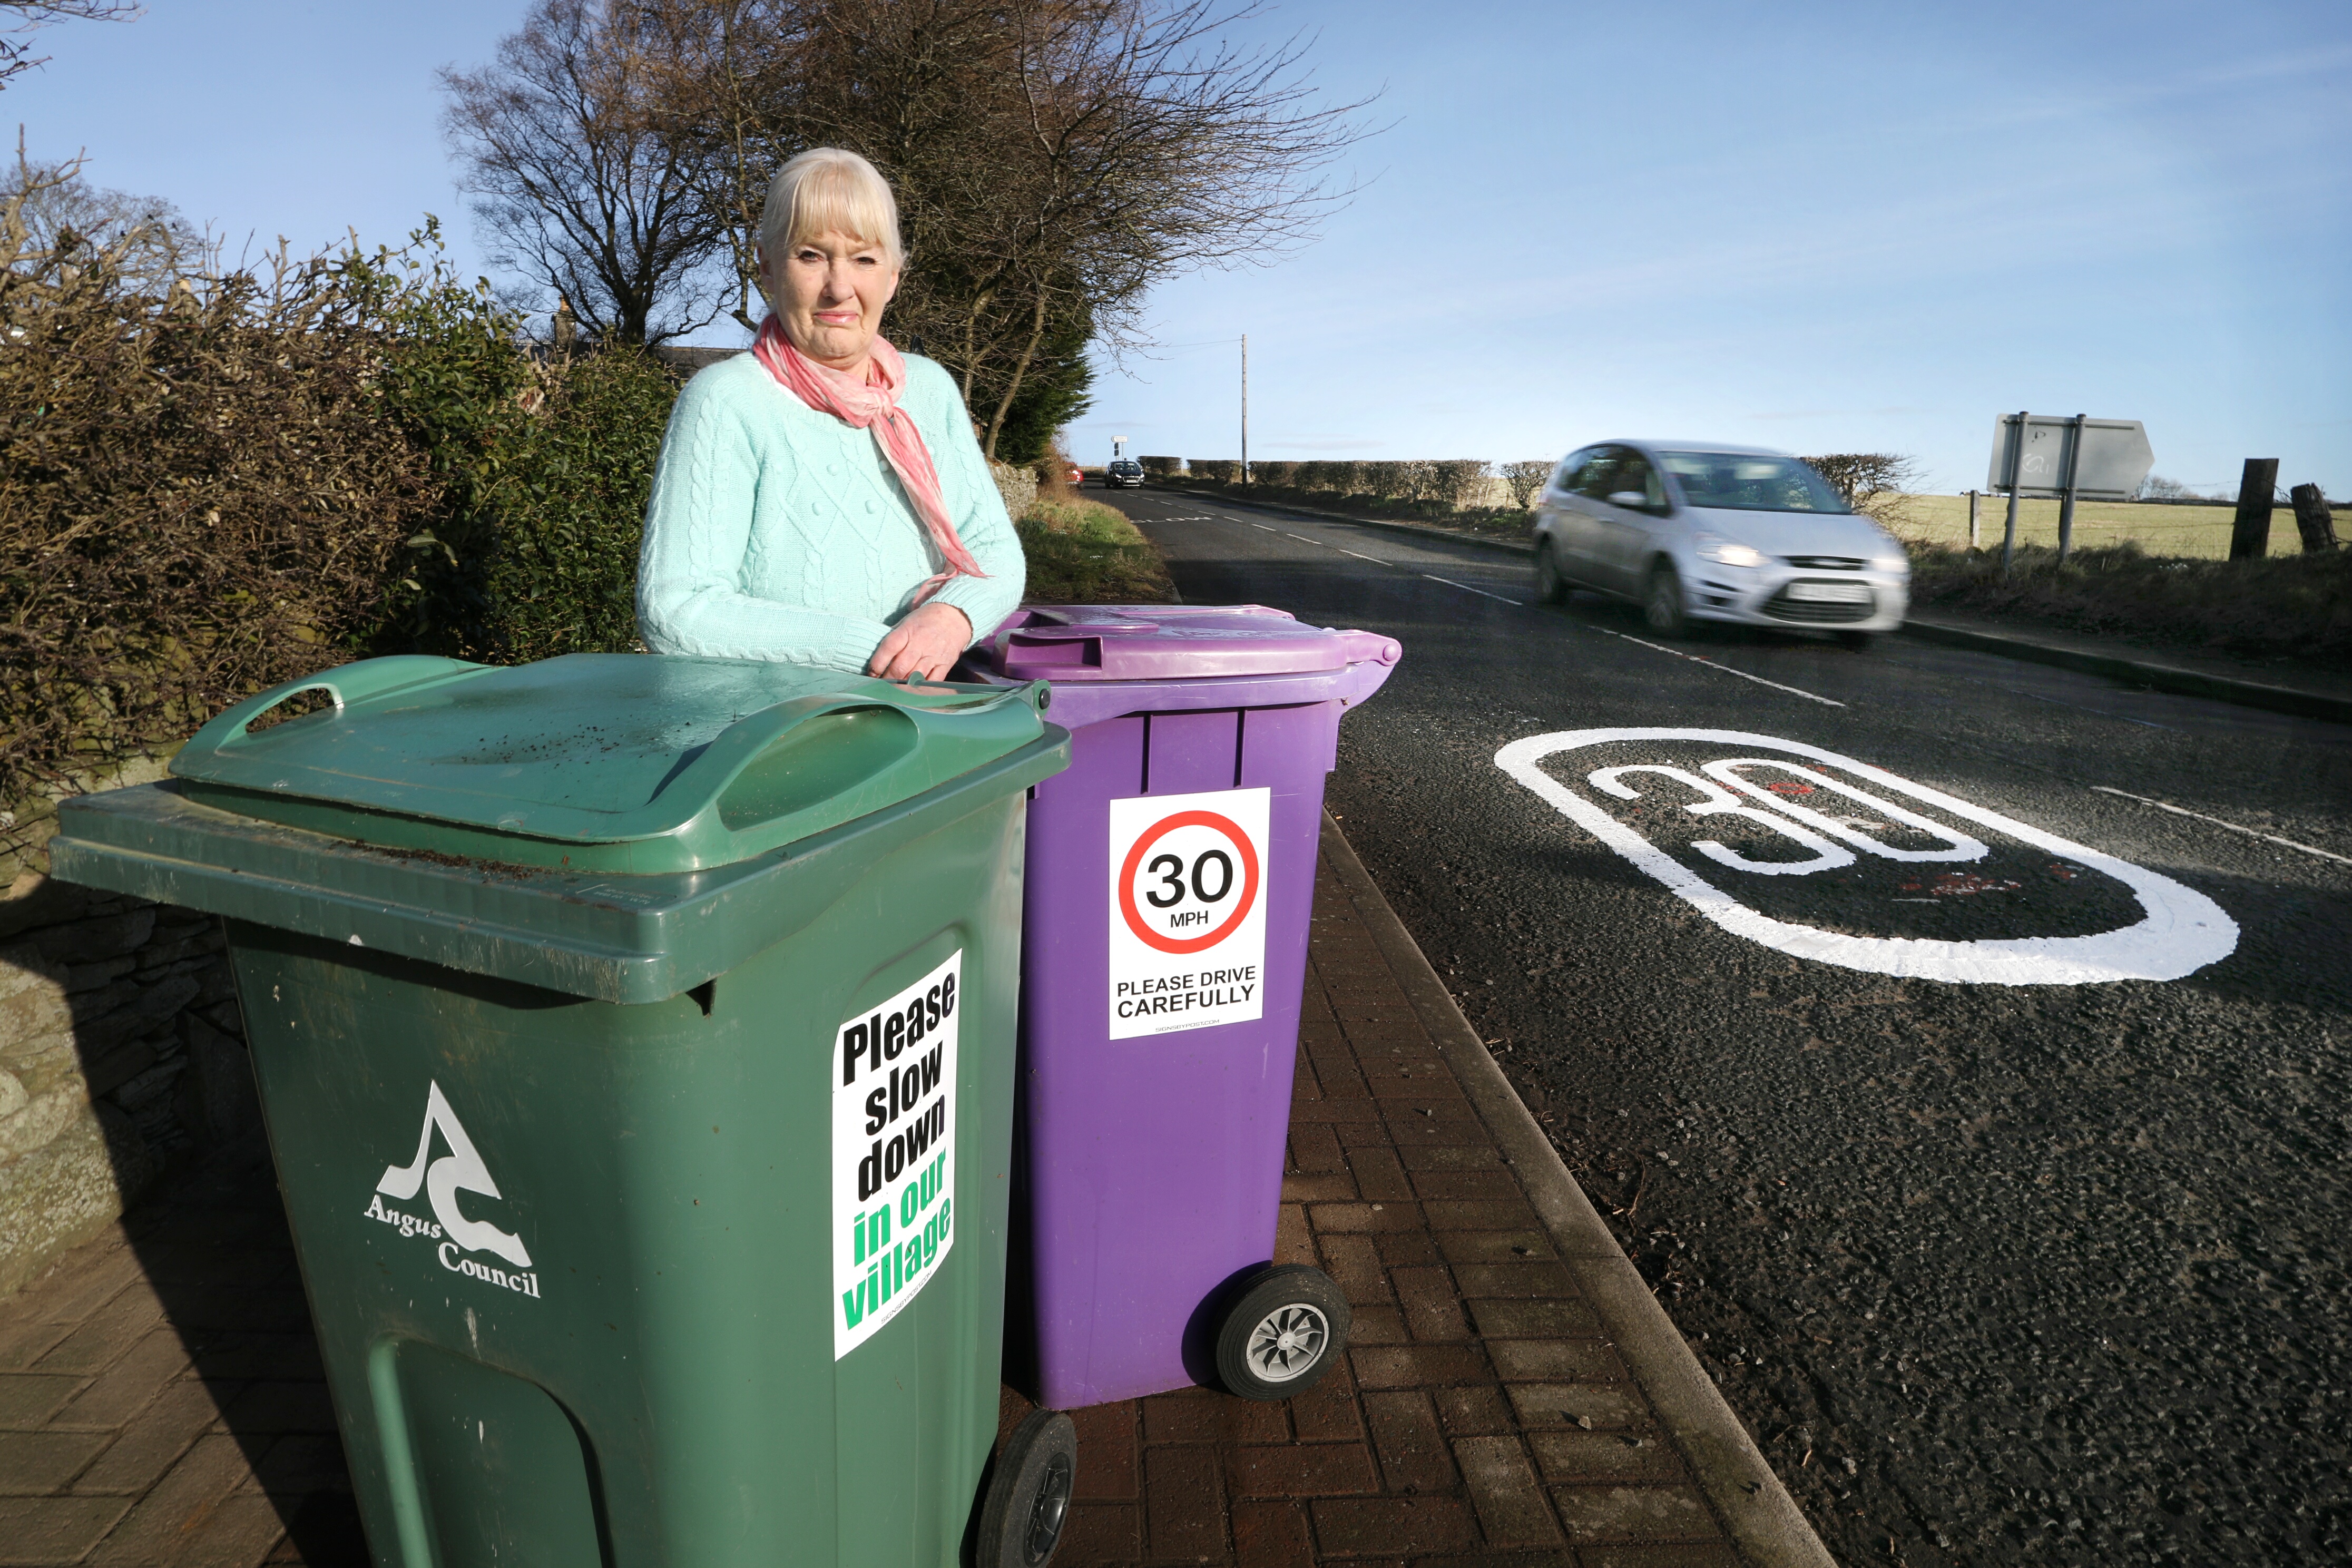 Mrs Mauran next to her 'slow down' wheelie bin signs